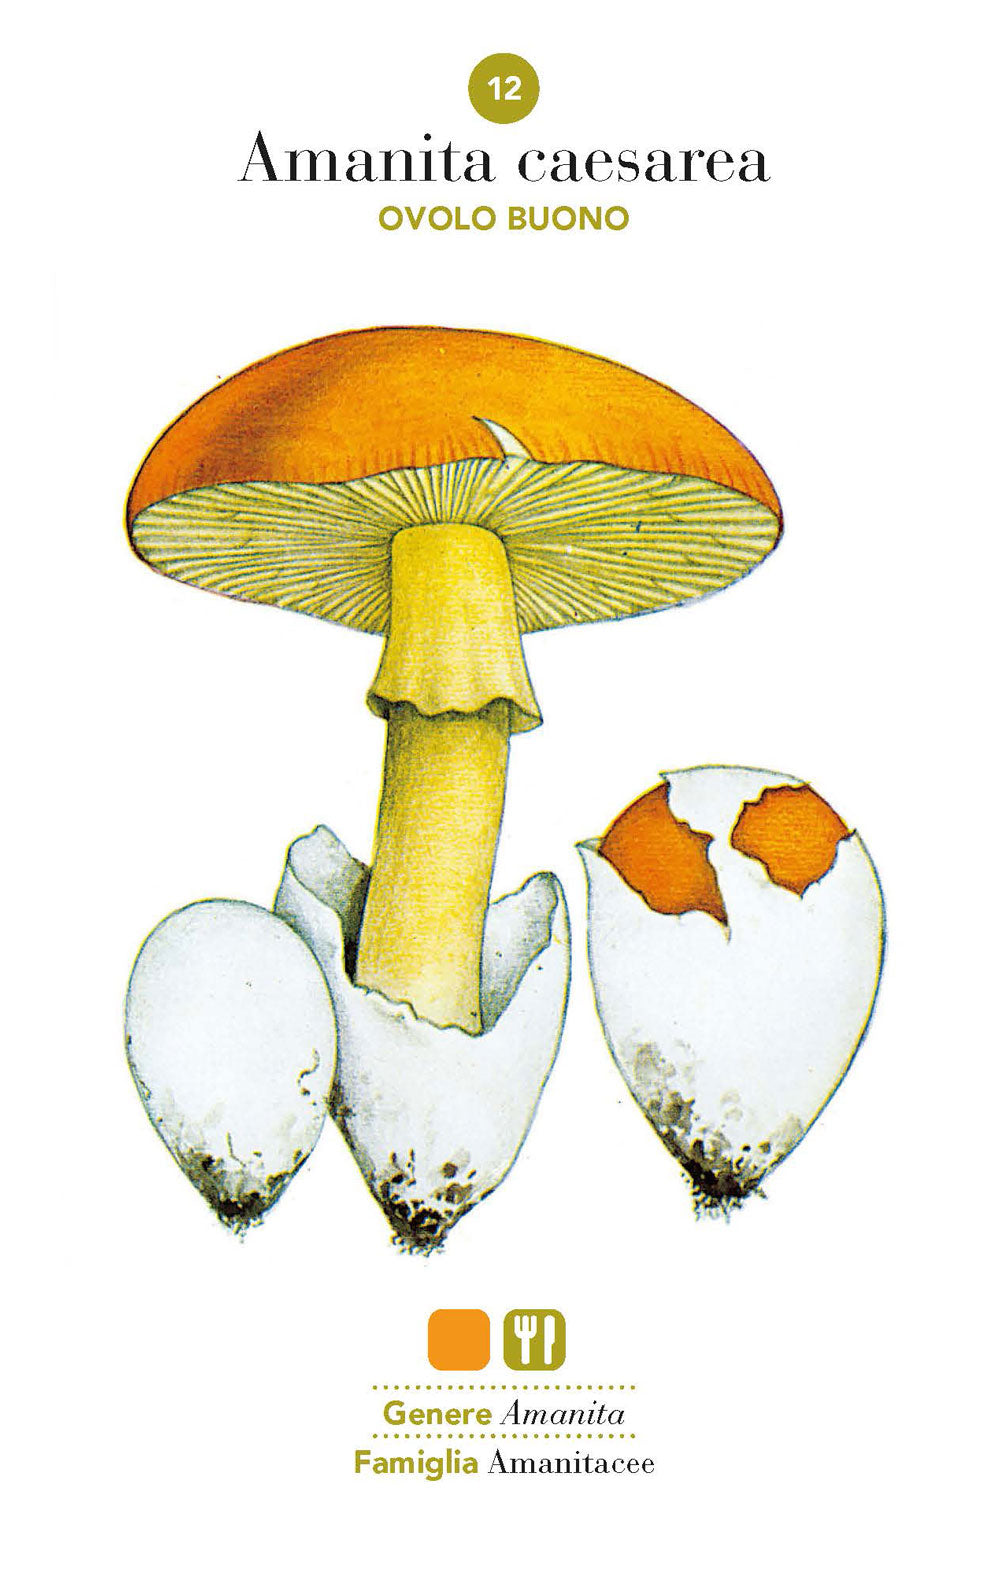 Funghi::101 schede per conoscere, riconoscere e trovare i funghi